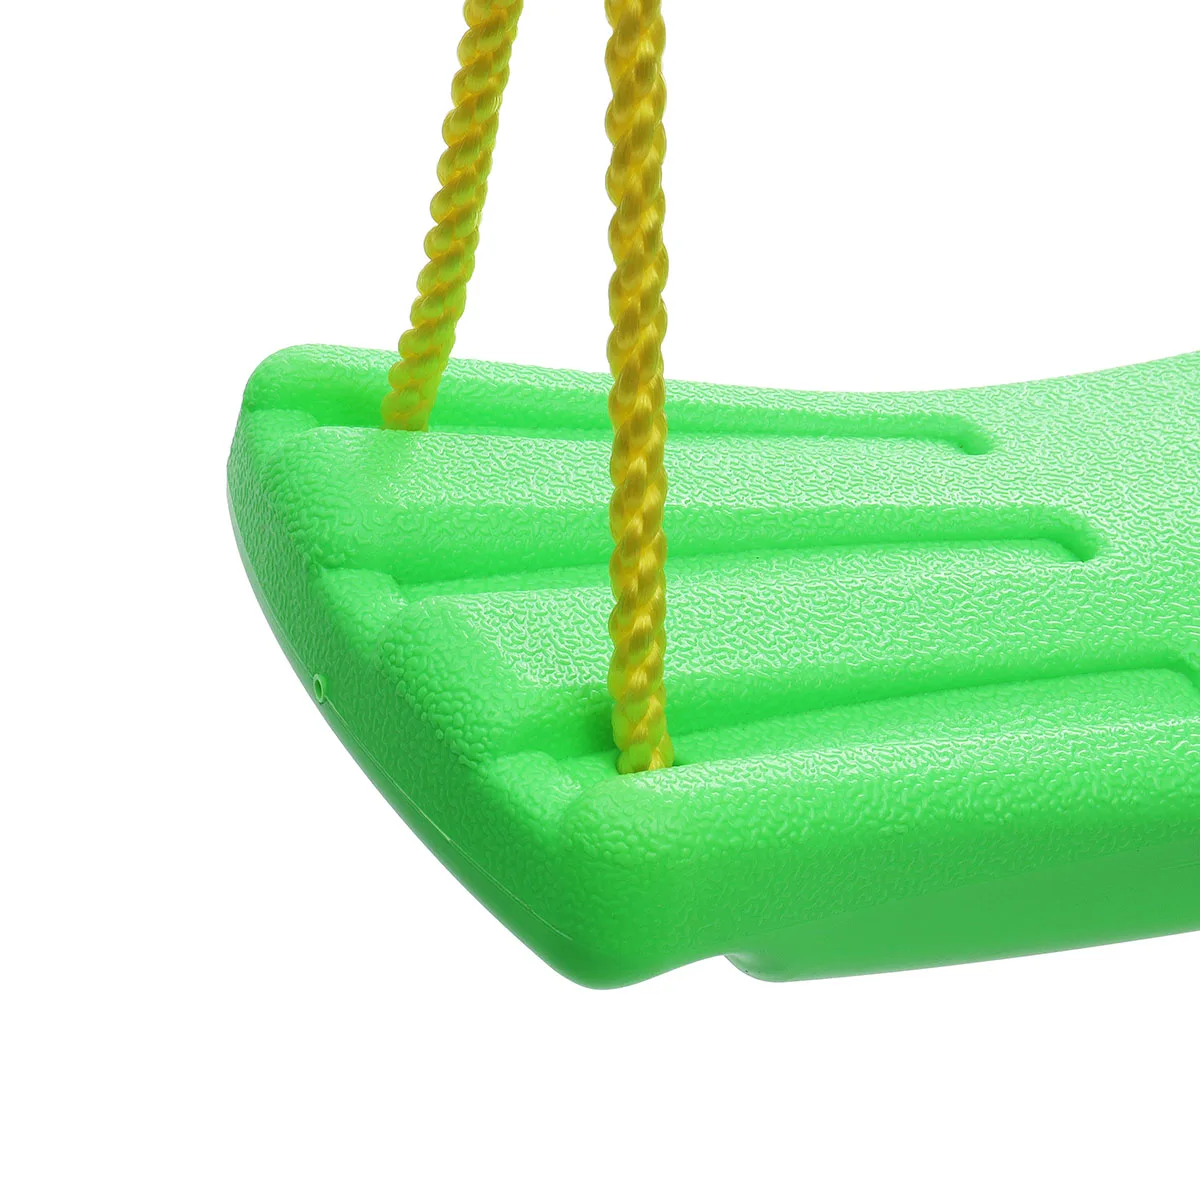 Детские игрушки для детей, уличное сиденье садовой качели, u-образная Регулируемая Веревка, пластиковые карамельные цвета, 37x17 см, для занятий спортом в помещении